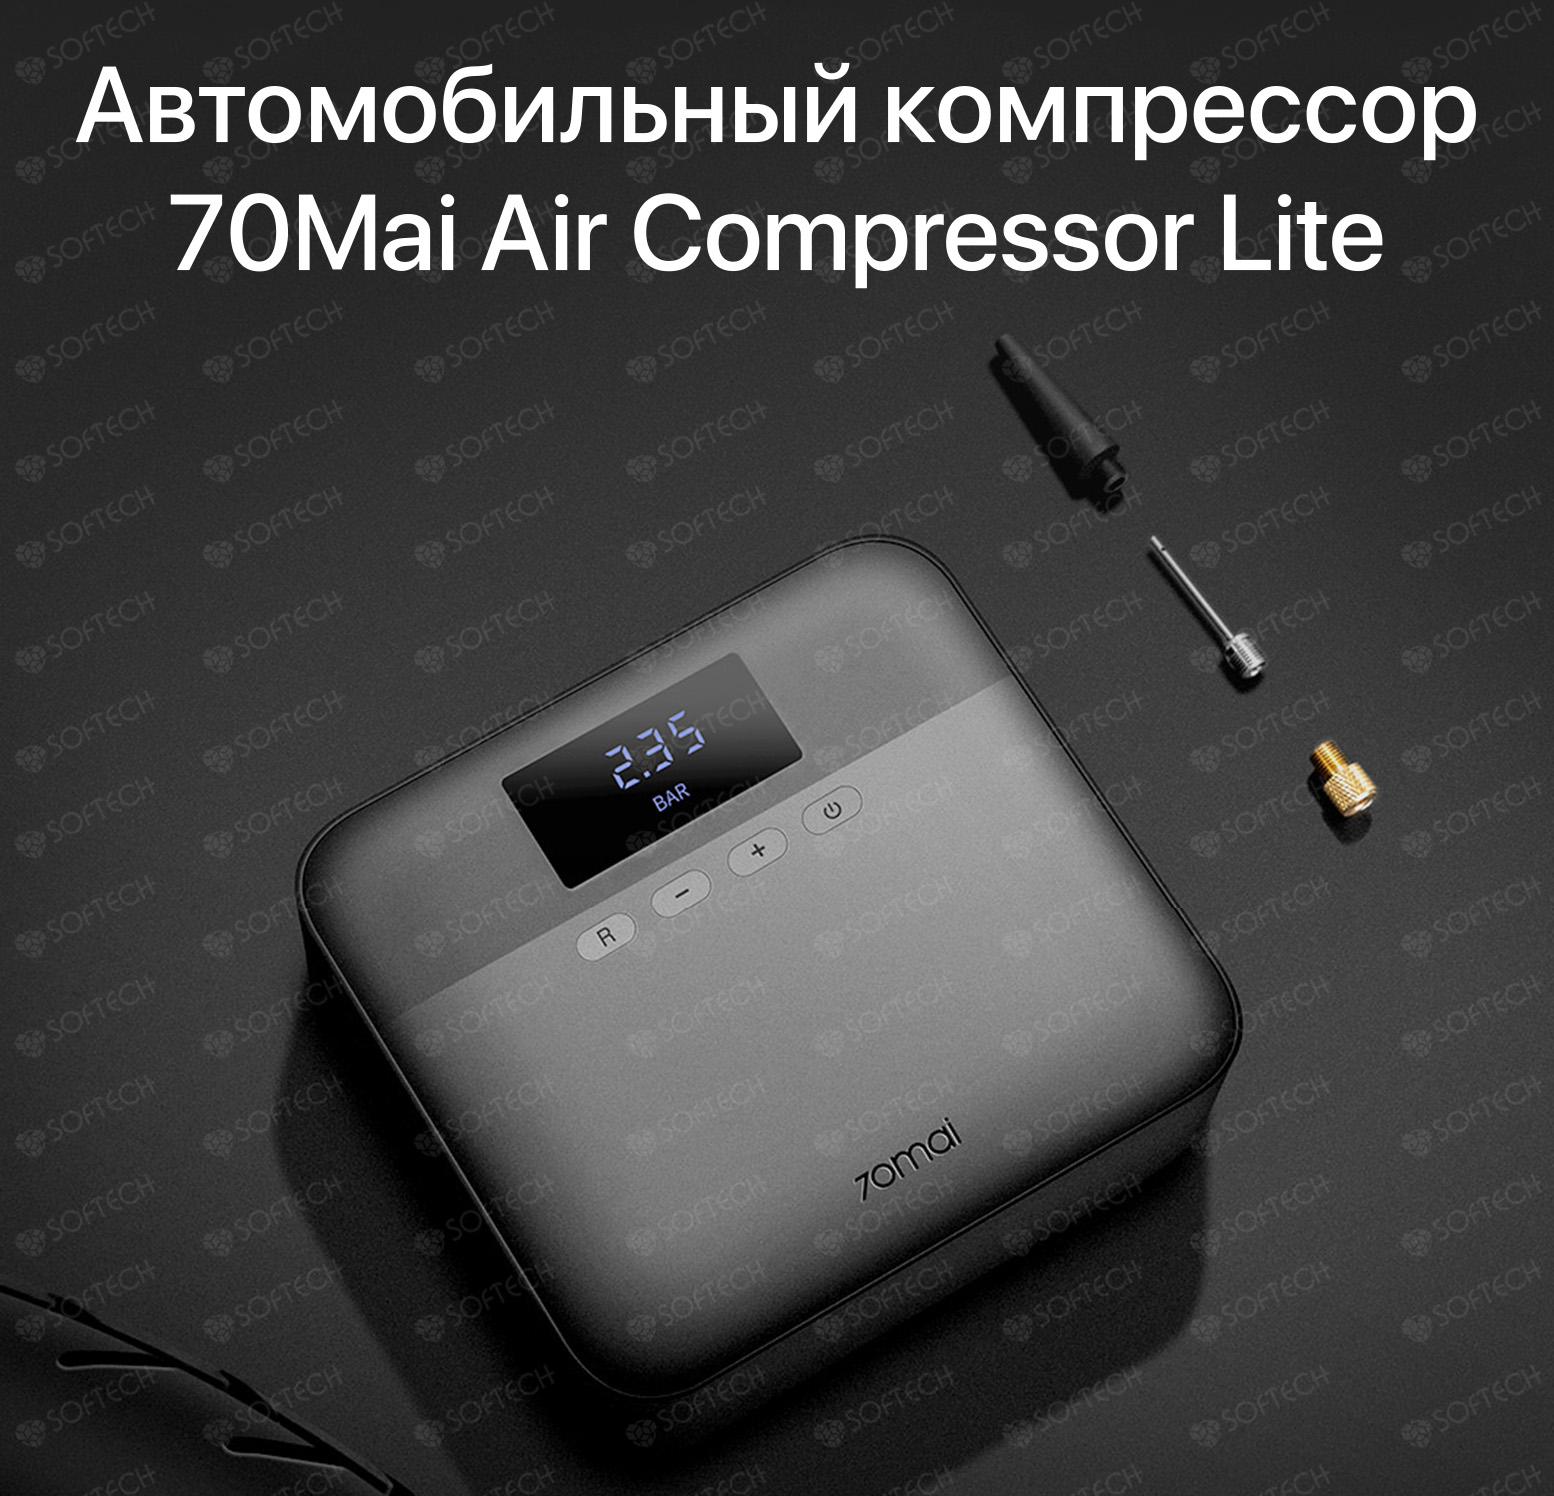 70mai air compressor tp03. Автомобильный компрессор Xiaomi 70mai Air Compressor Lite. Автомобильный компрессор 70mai Air Compressor MIDRIVE tp01. Автомобильный компрессор Xiaomi 70mai Air Compressor MIDRIVE tp01. Автомобильный компрессор 70mai Air Compressor Lite черный.